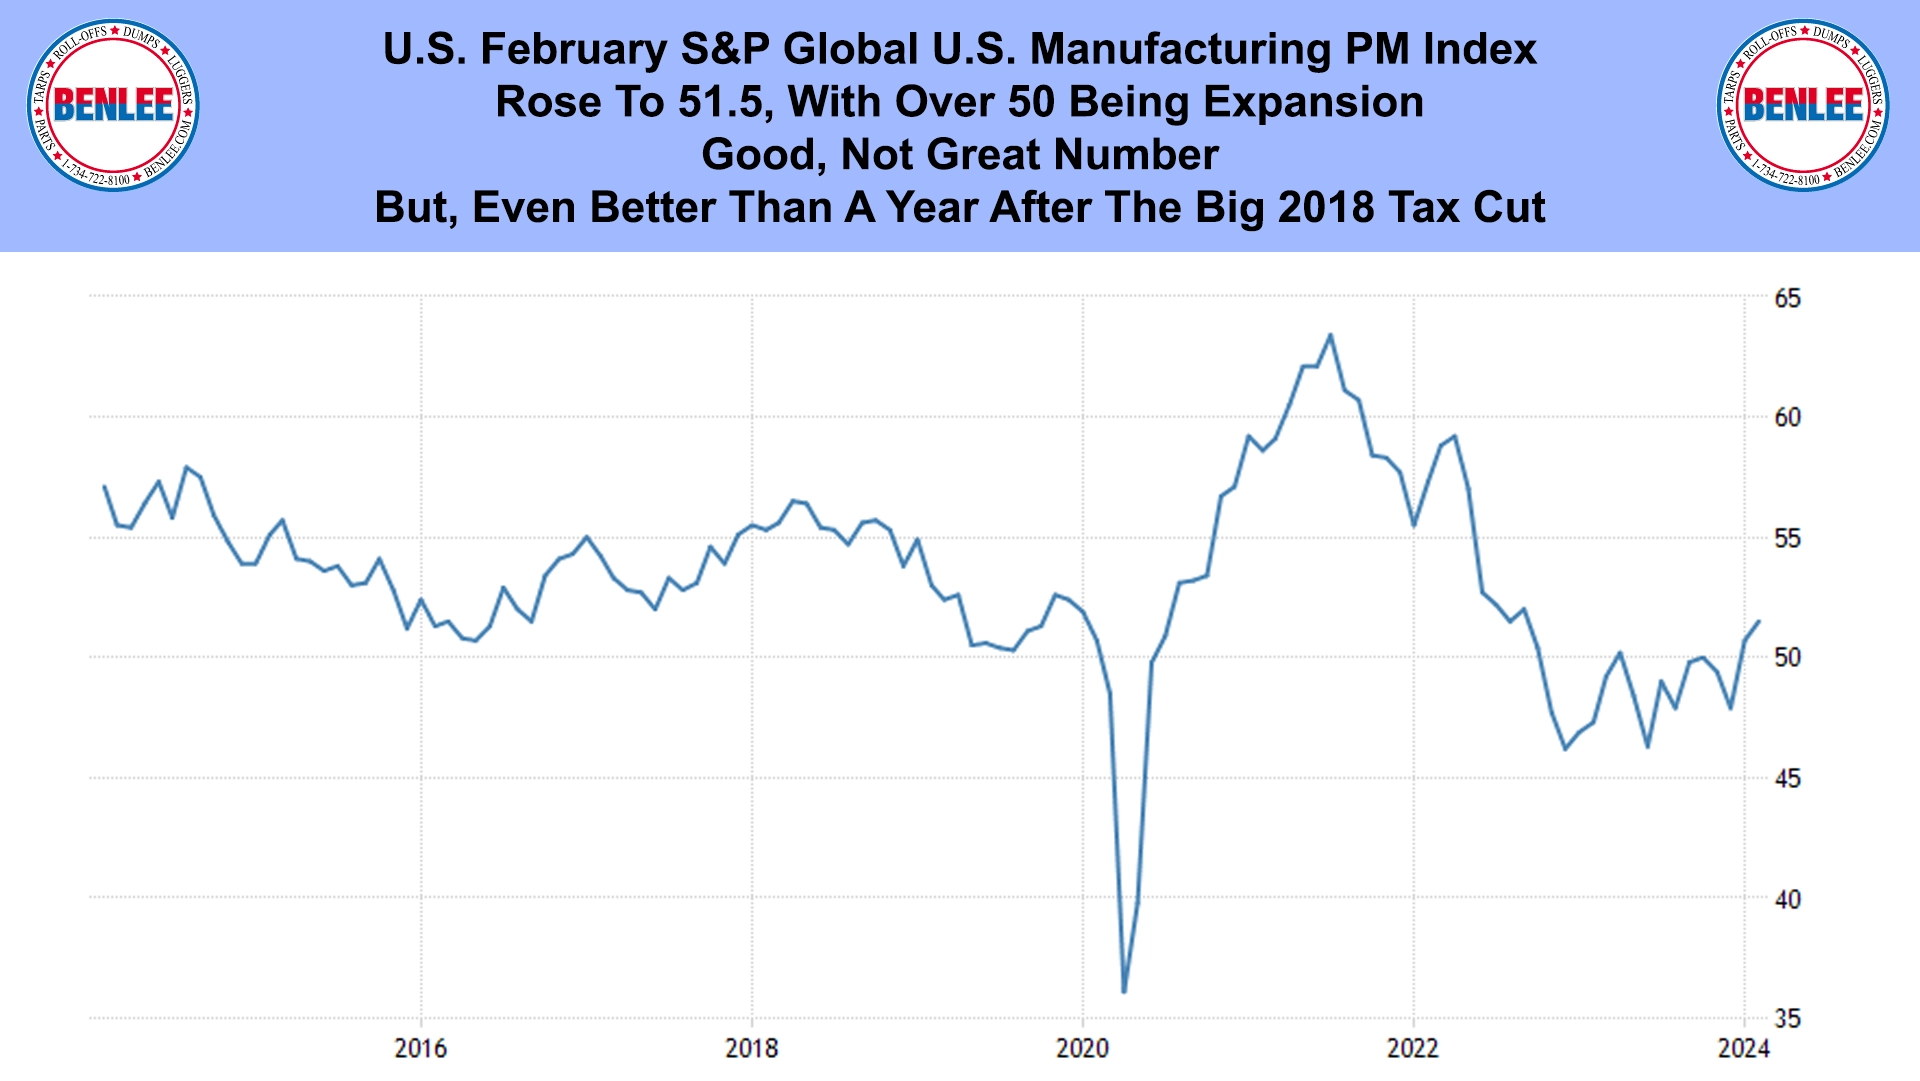 U.S. February S&P Global U.S. Manufacturing PM Index